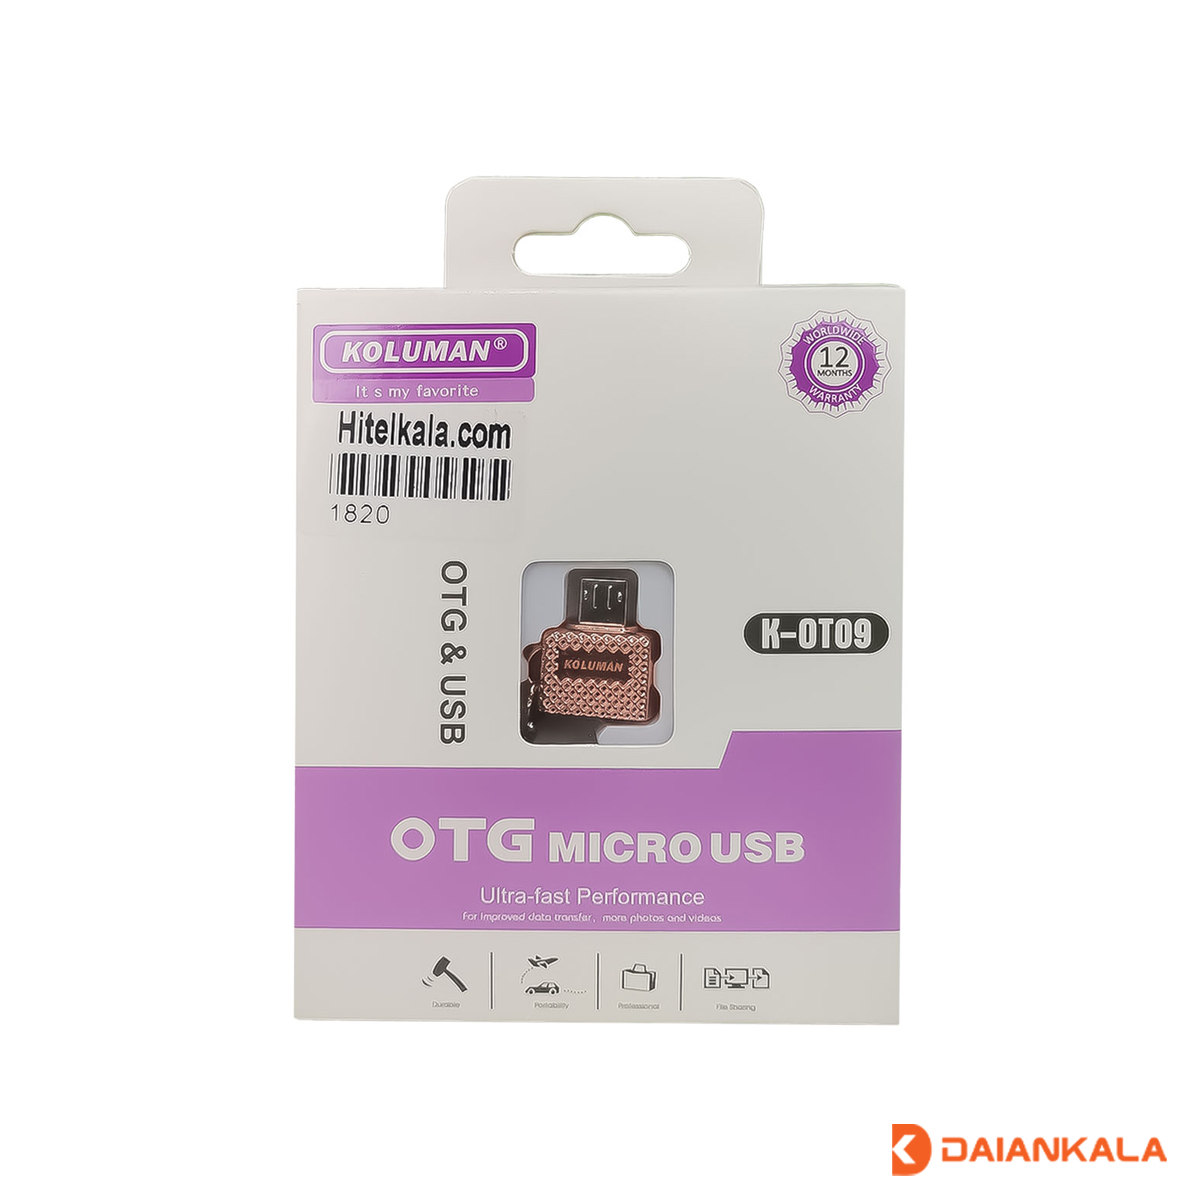 مبدل OTG microUSB به USB کلومن مدل K-OT09